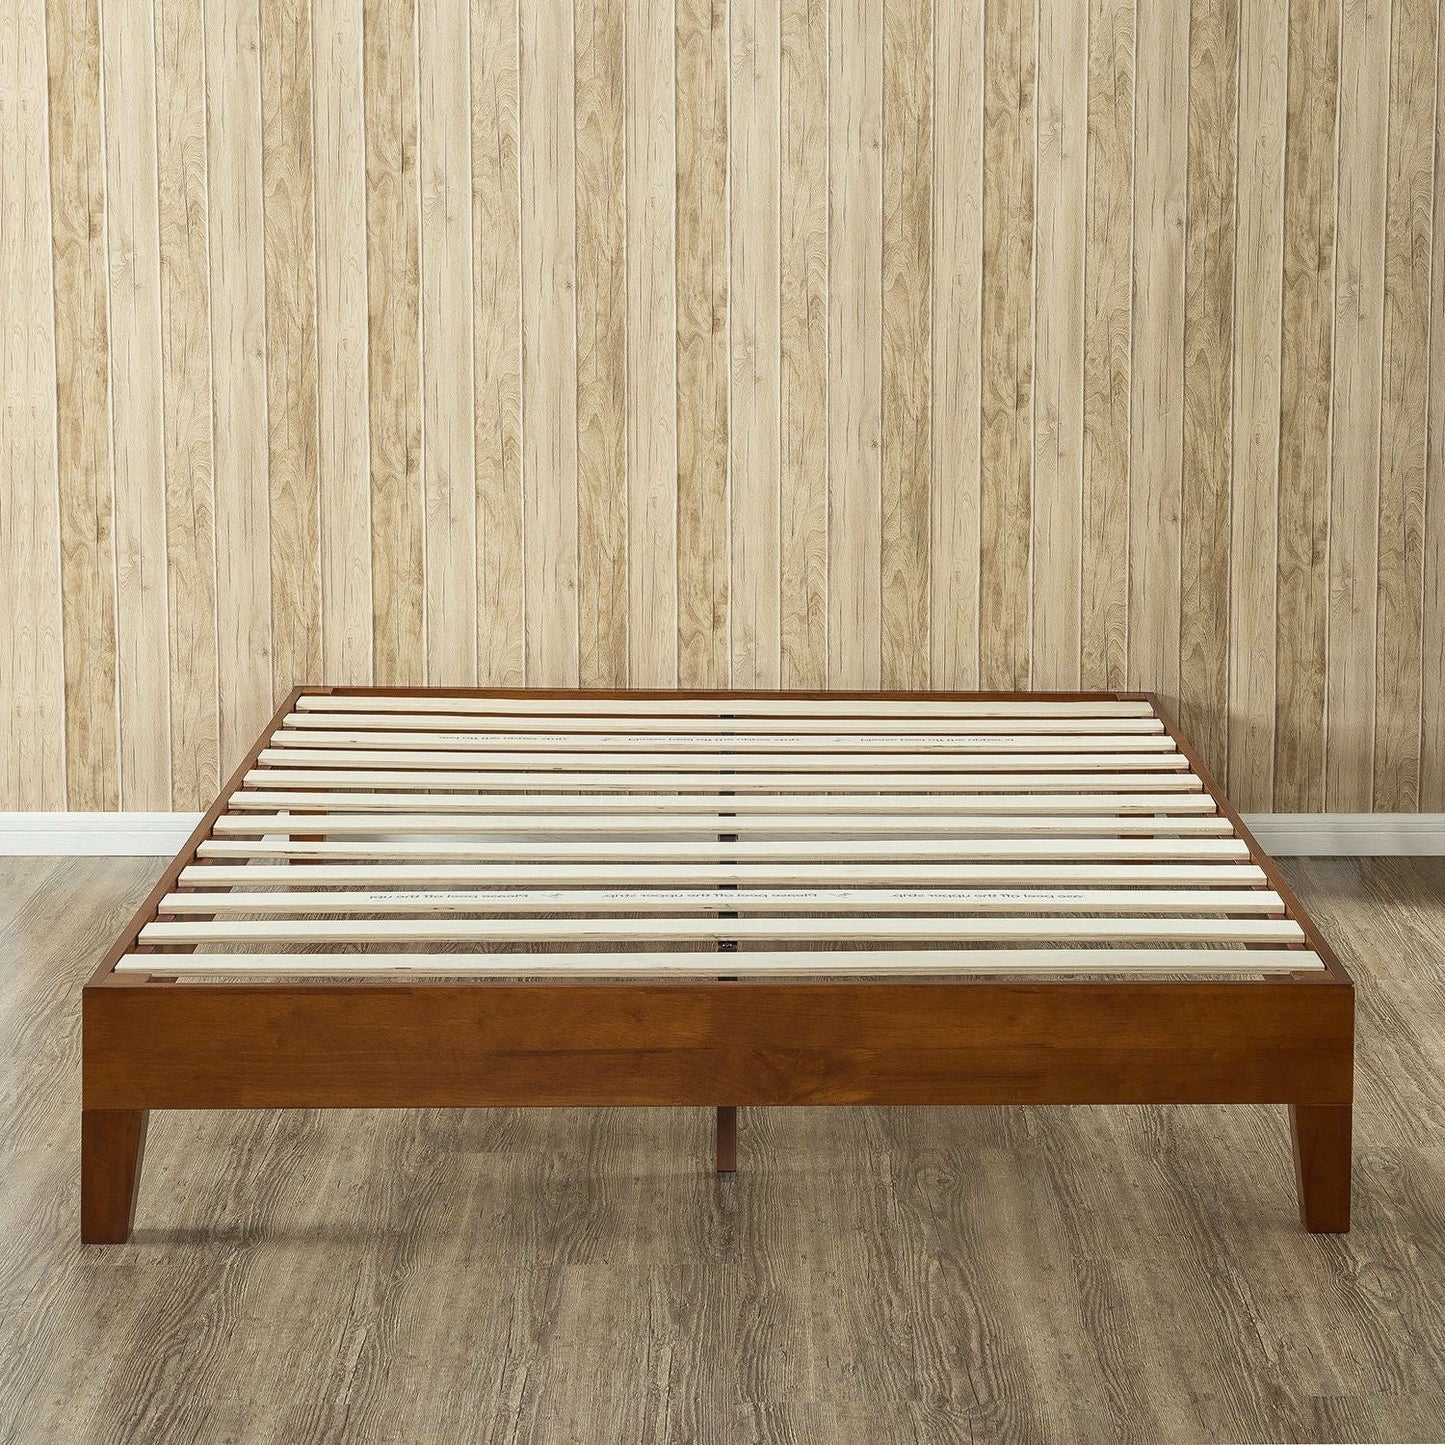 Bedroom > Bed Frames > Platform Beds - King Size Modern Low Profile Solid Wood Platform Bed Frame In Cherry Finish